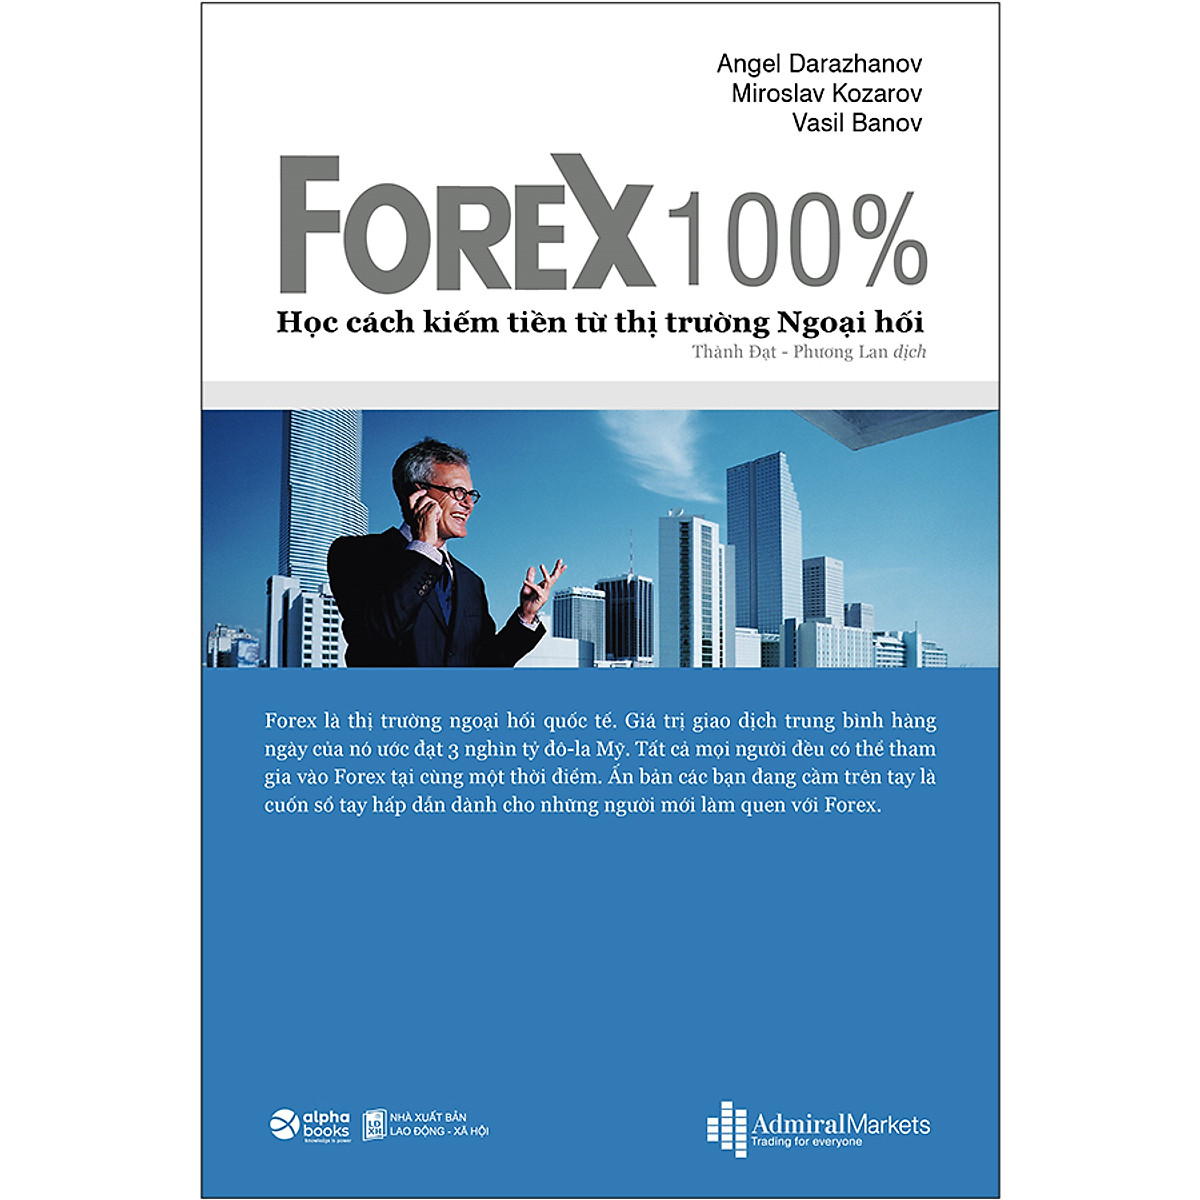 Combo 2 cuốn sách: Forex 100% - Học Cách Kiếm Tiền Trên Thị Trường  + Phương Pháp Đầu Tư Từ Warren Buffett